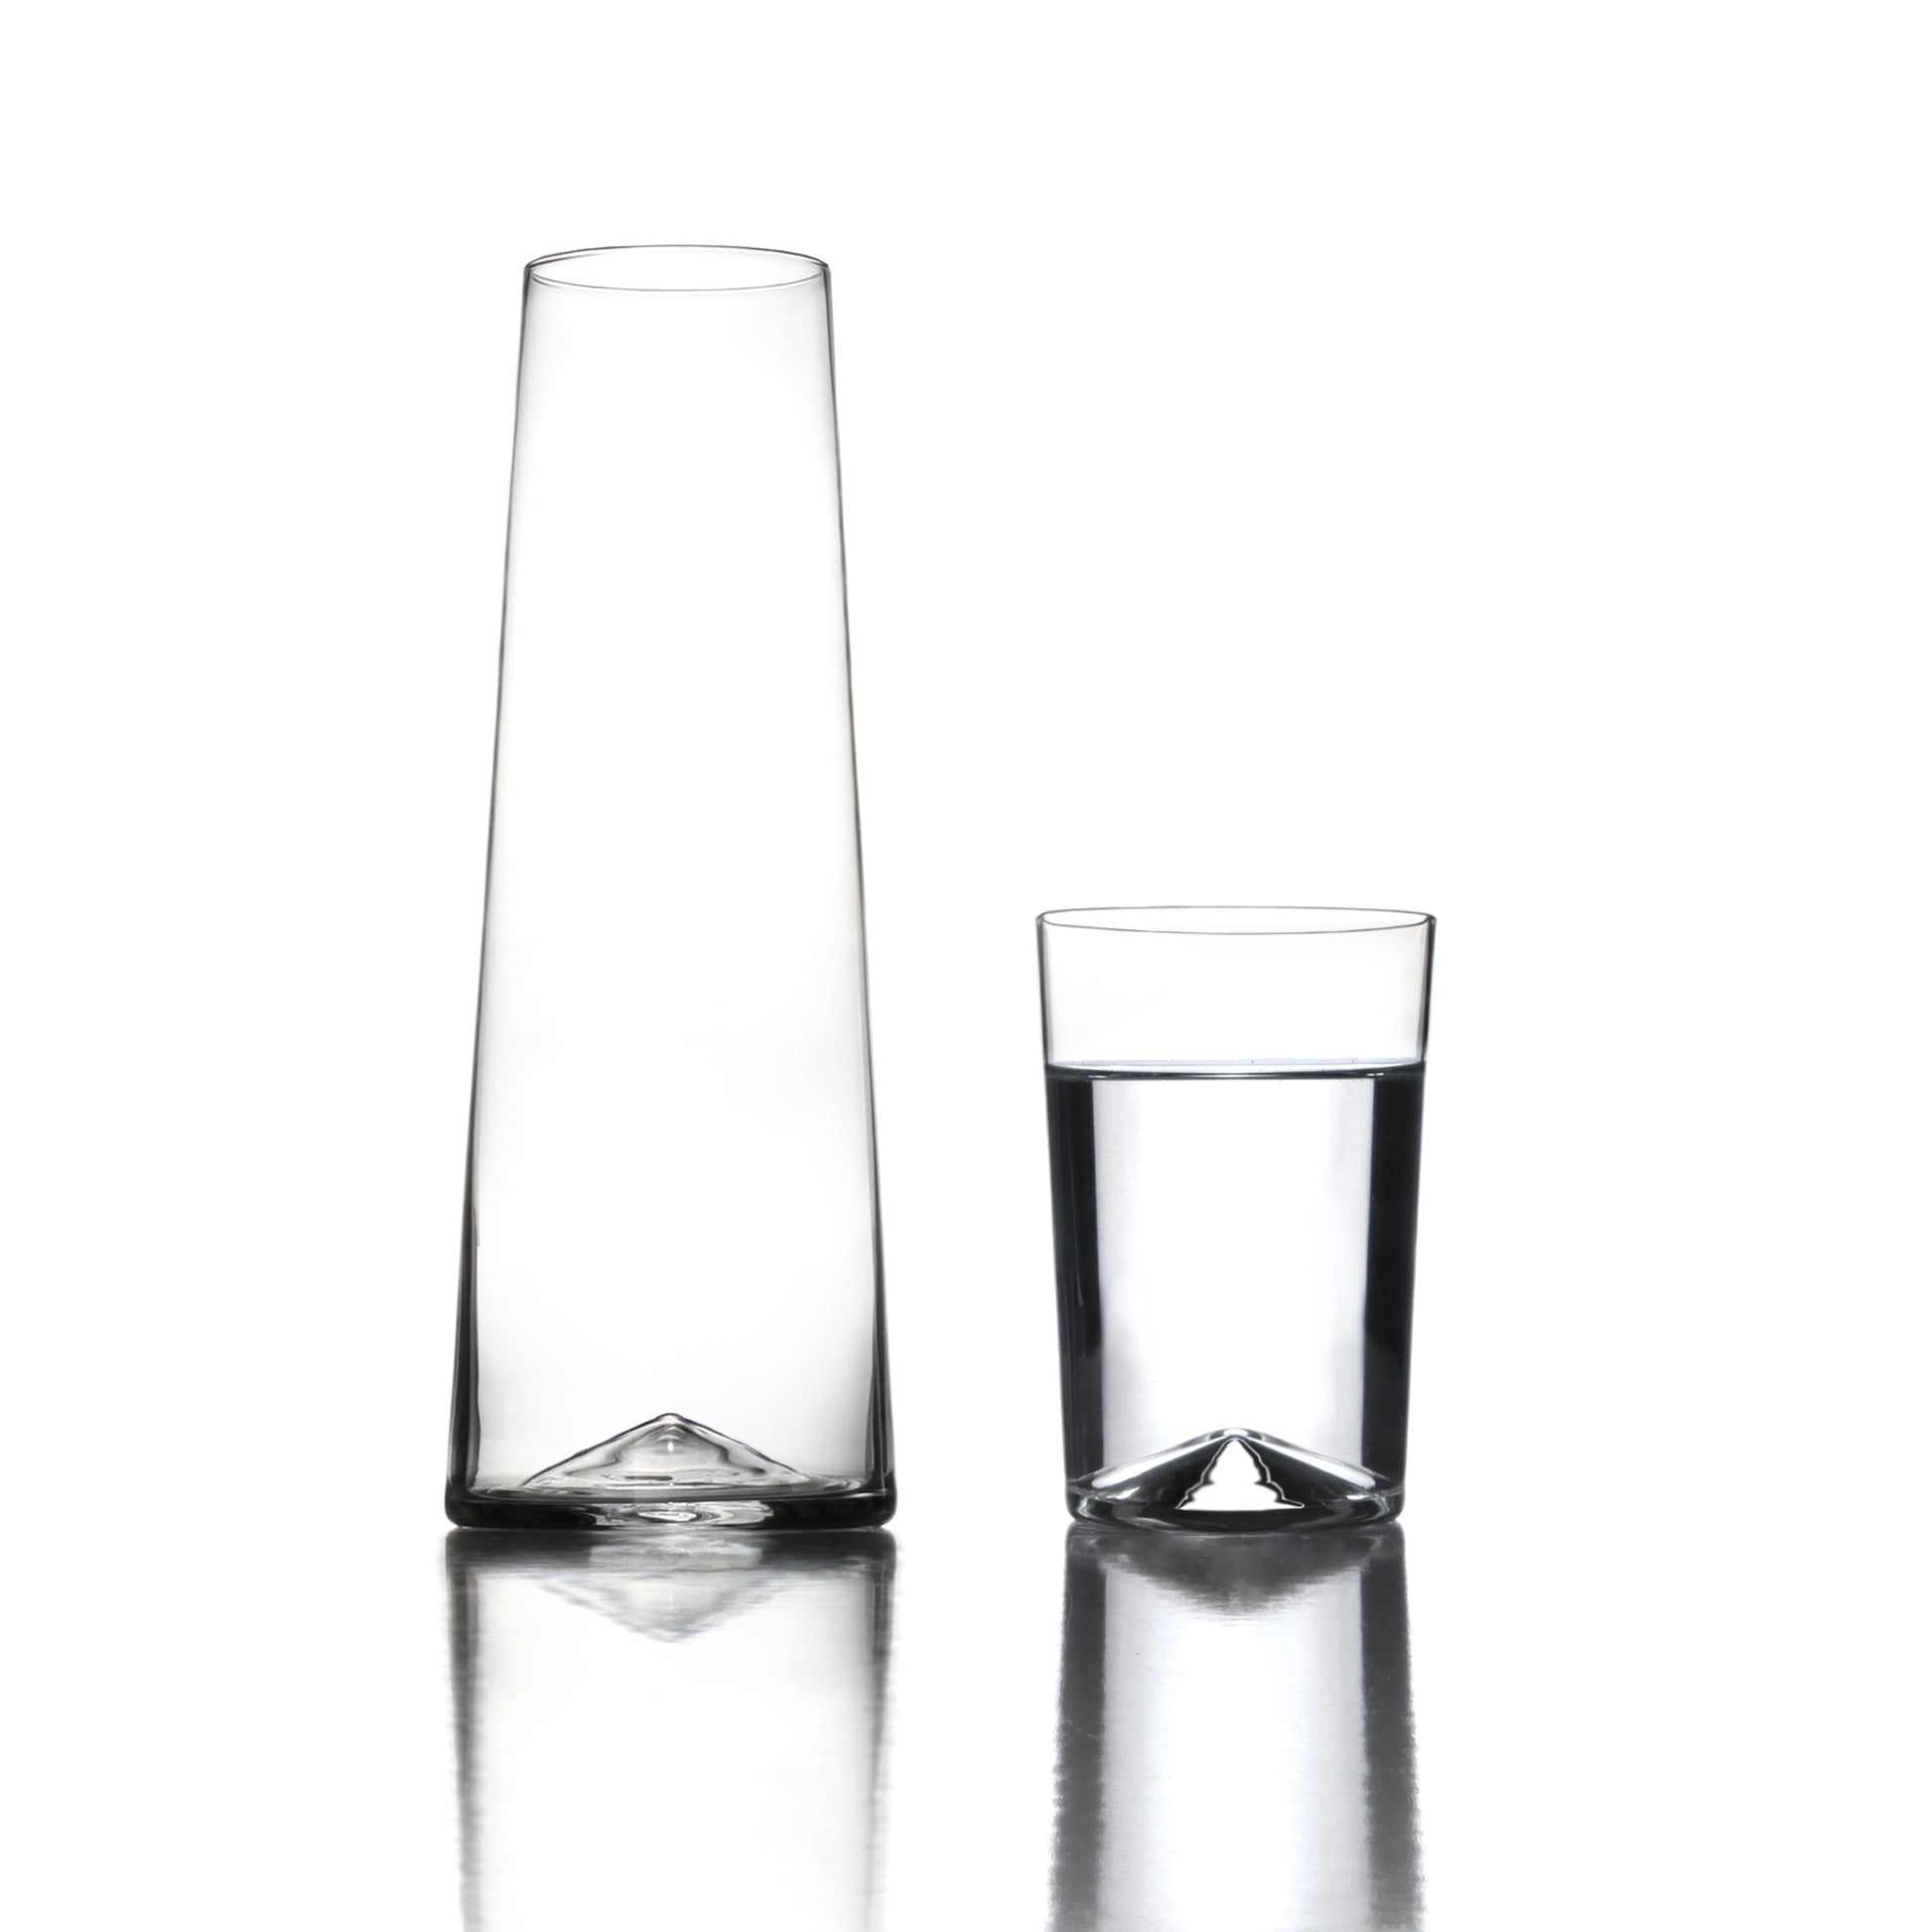 Monti Sonno Carafe and Monti Aqua Glass Set by Sempli | Luxury Glassware | Willow & Albert Home